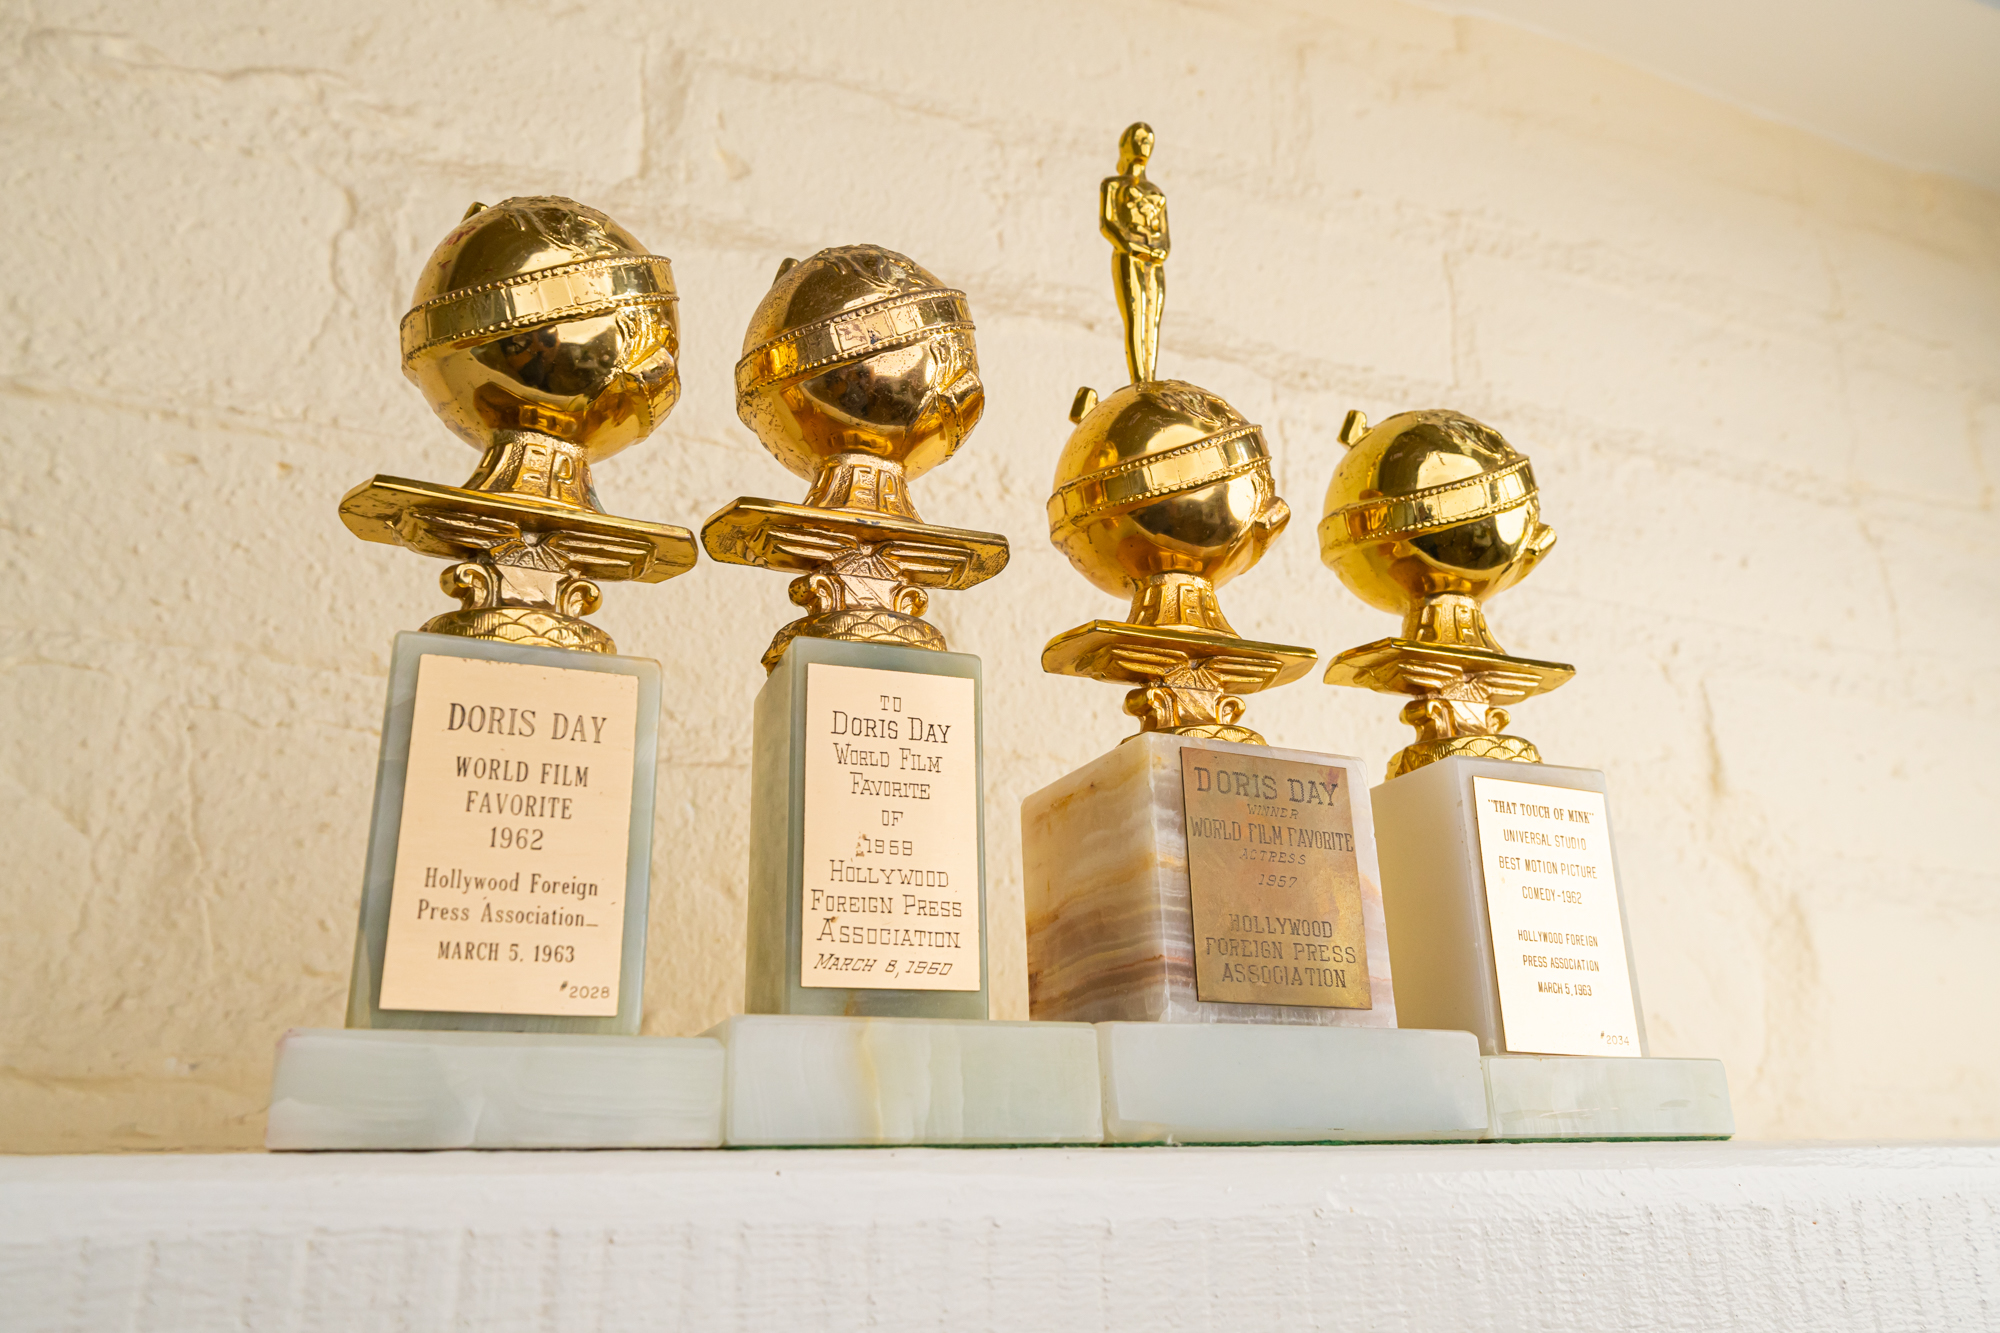 Doris Day's Golden Globe awards